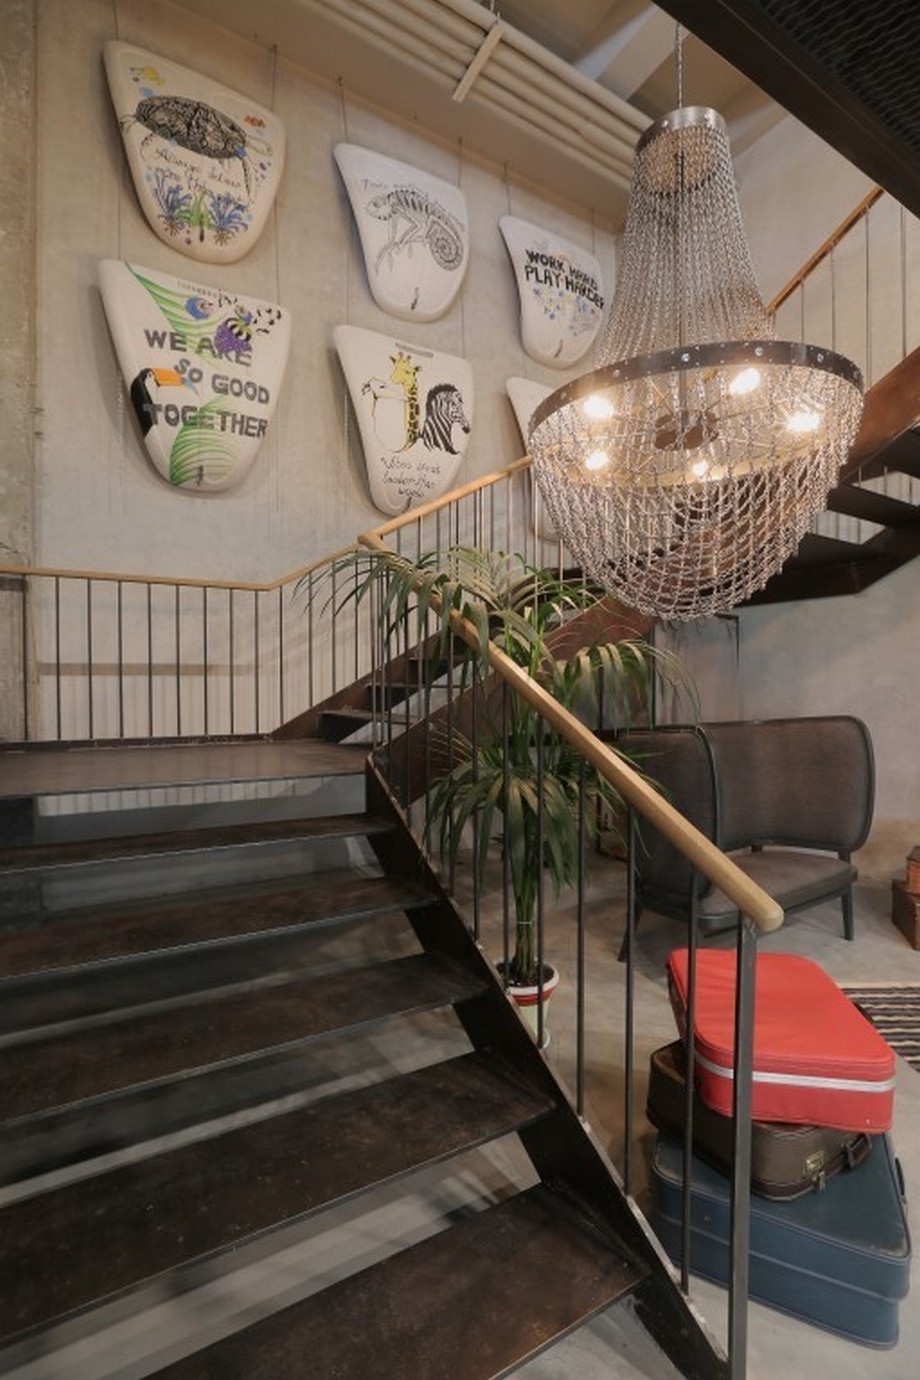 Dự án: Cải tạo nhà máy cũ thành không gian làm việc chung coworking space tuyệt đẹp thiết kế theo phong cách công nghiệp > Thiết kế cầu thang trong văn phòng với cách trang trí mới lạ